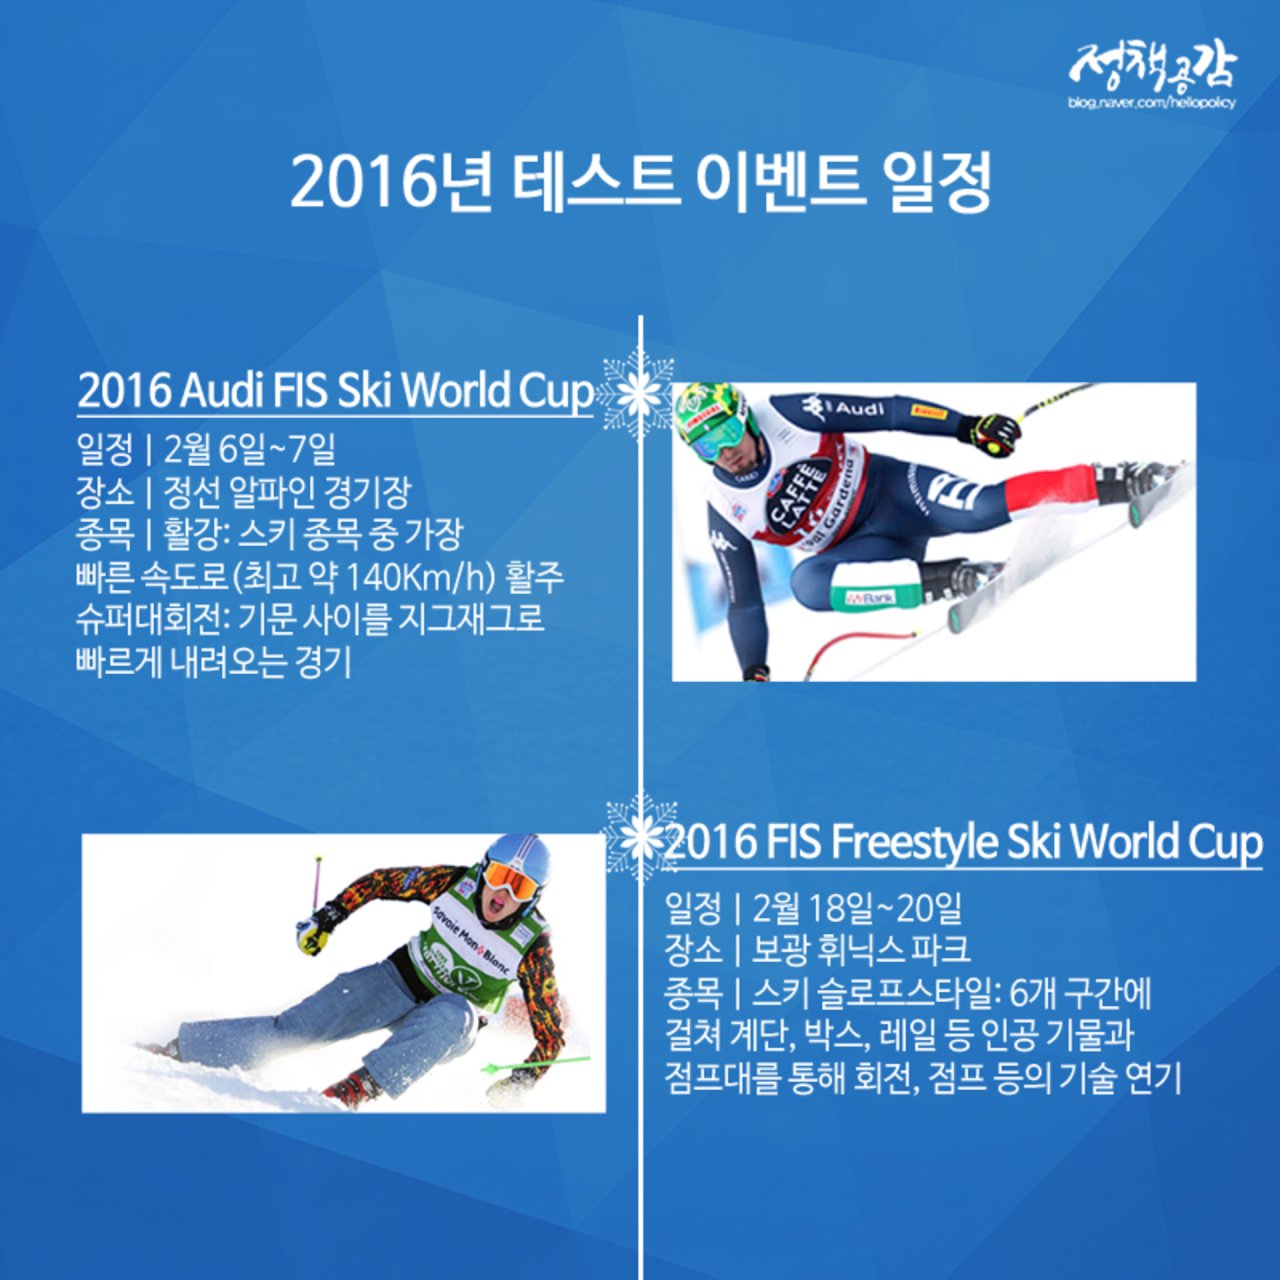 눈과 얼음 위 드라마 ‘2018 평창 동계올림픽’ 서막 열다